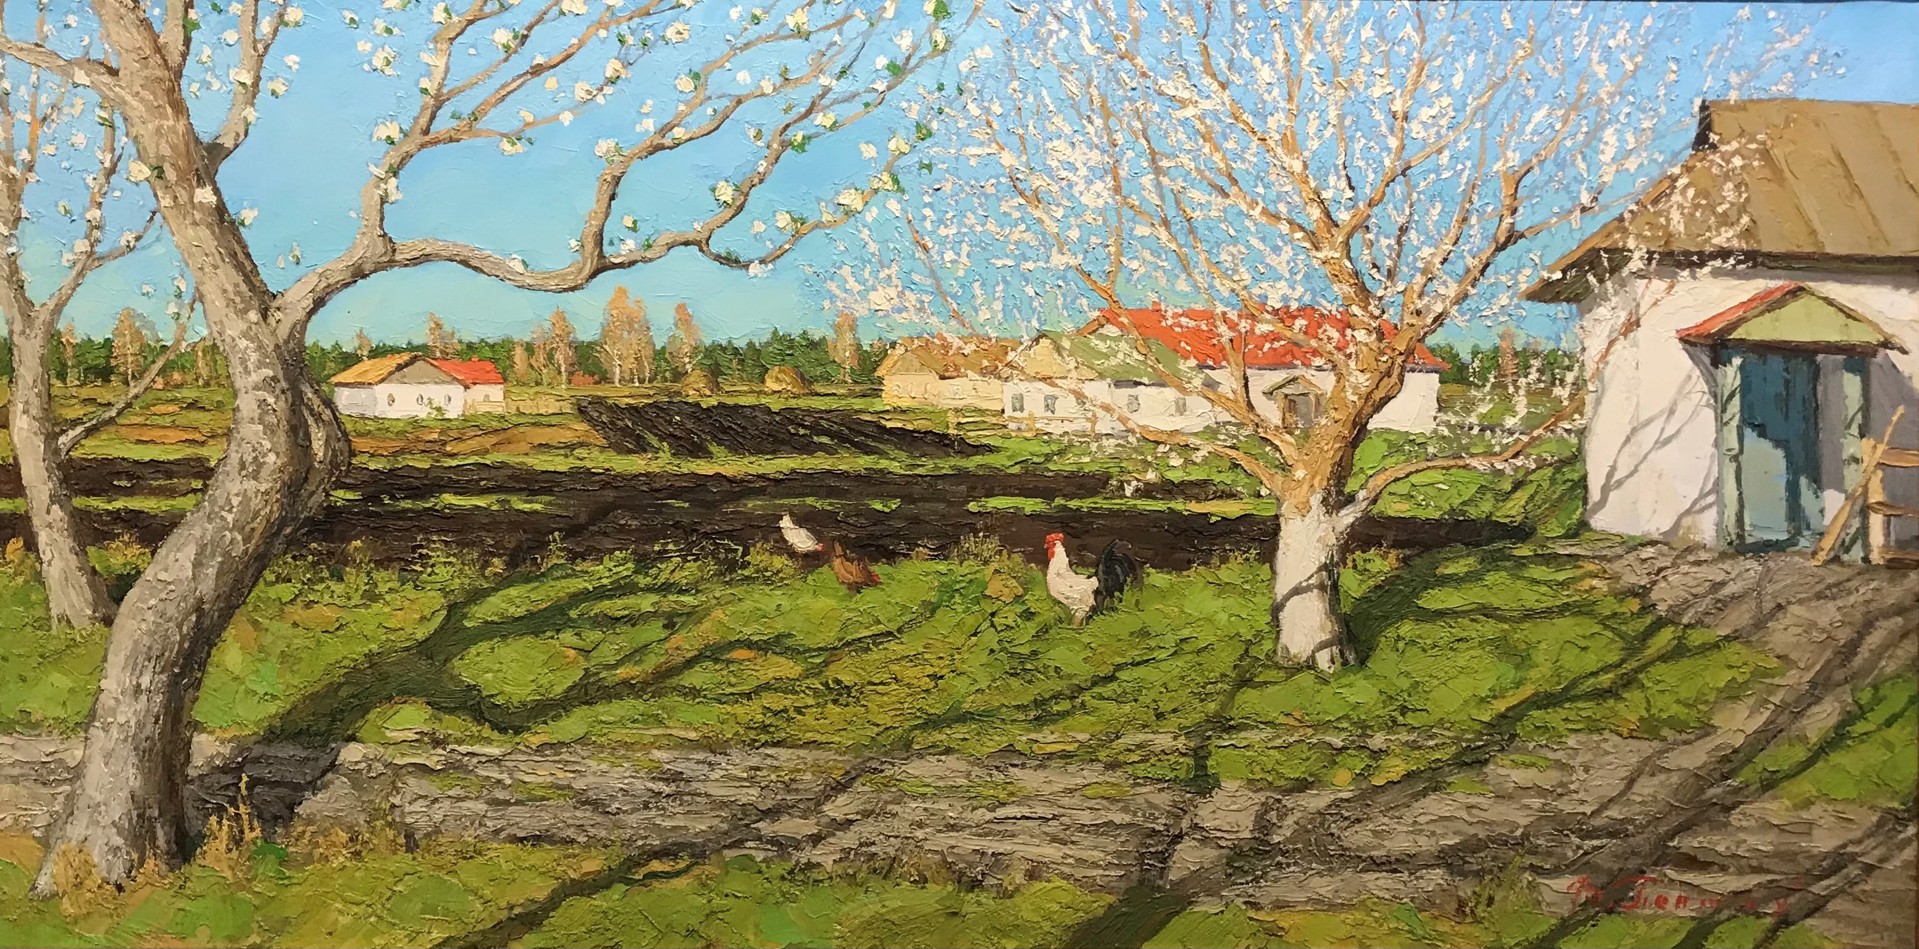 Farm Blossom by Vladimir Pentjuh